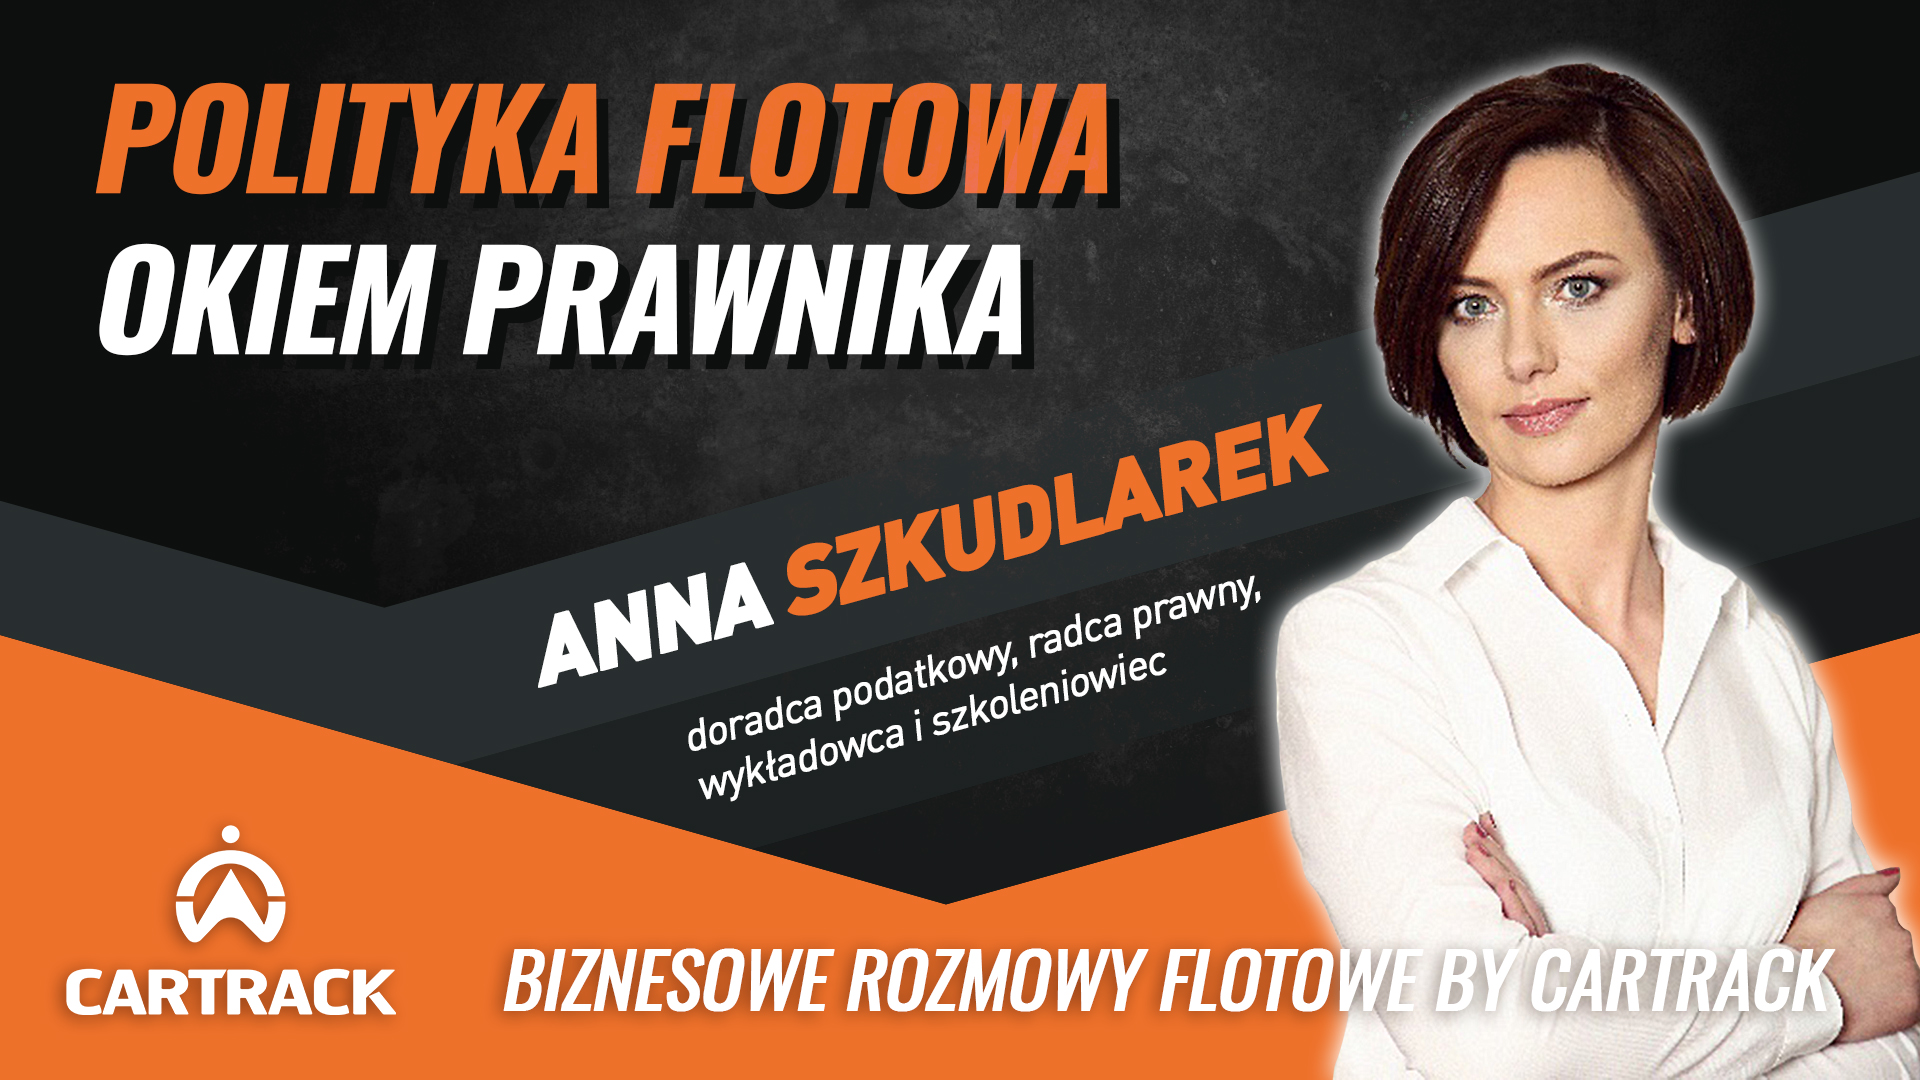 Polityka Flotowa okiem prawnika – Anna Szkudlarek, radca prawny.